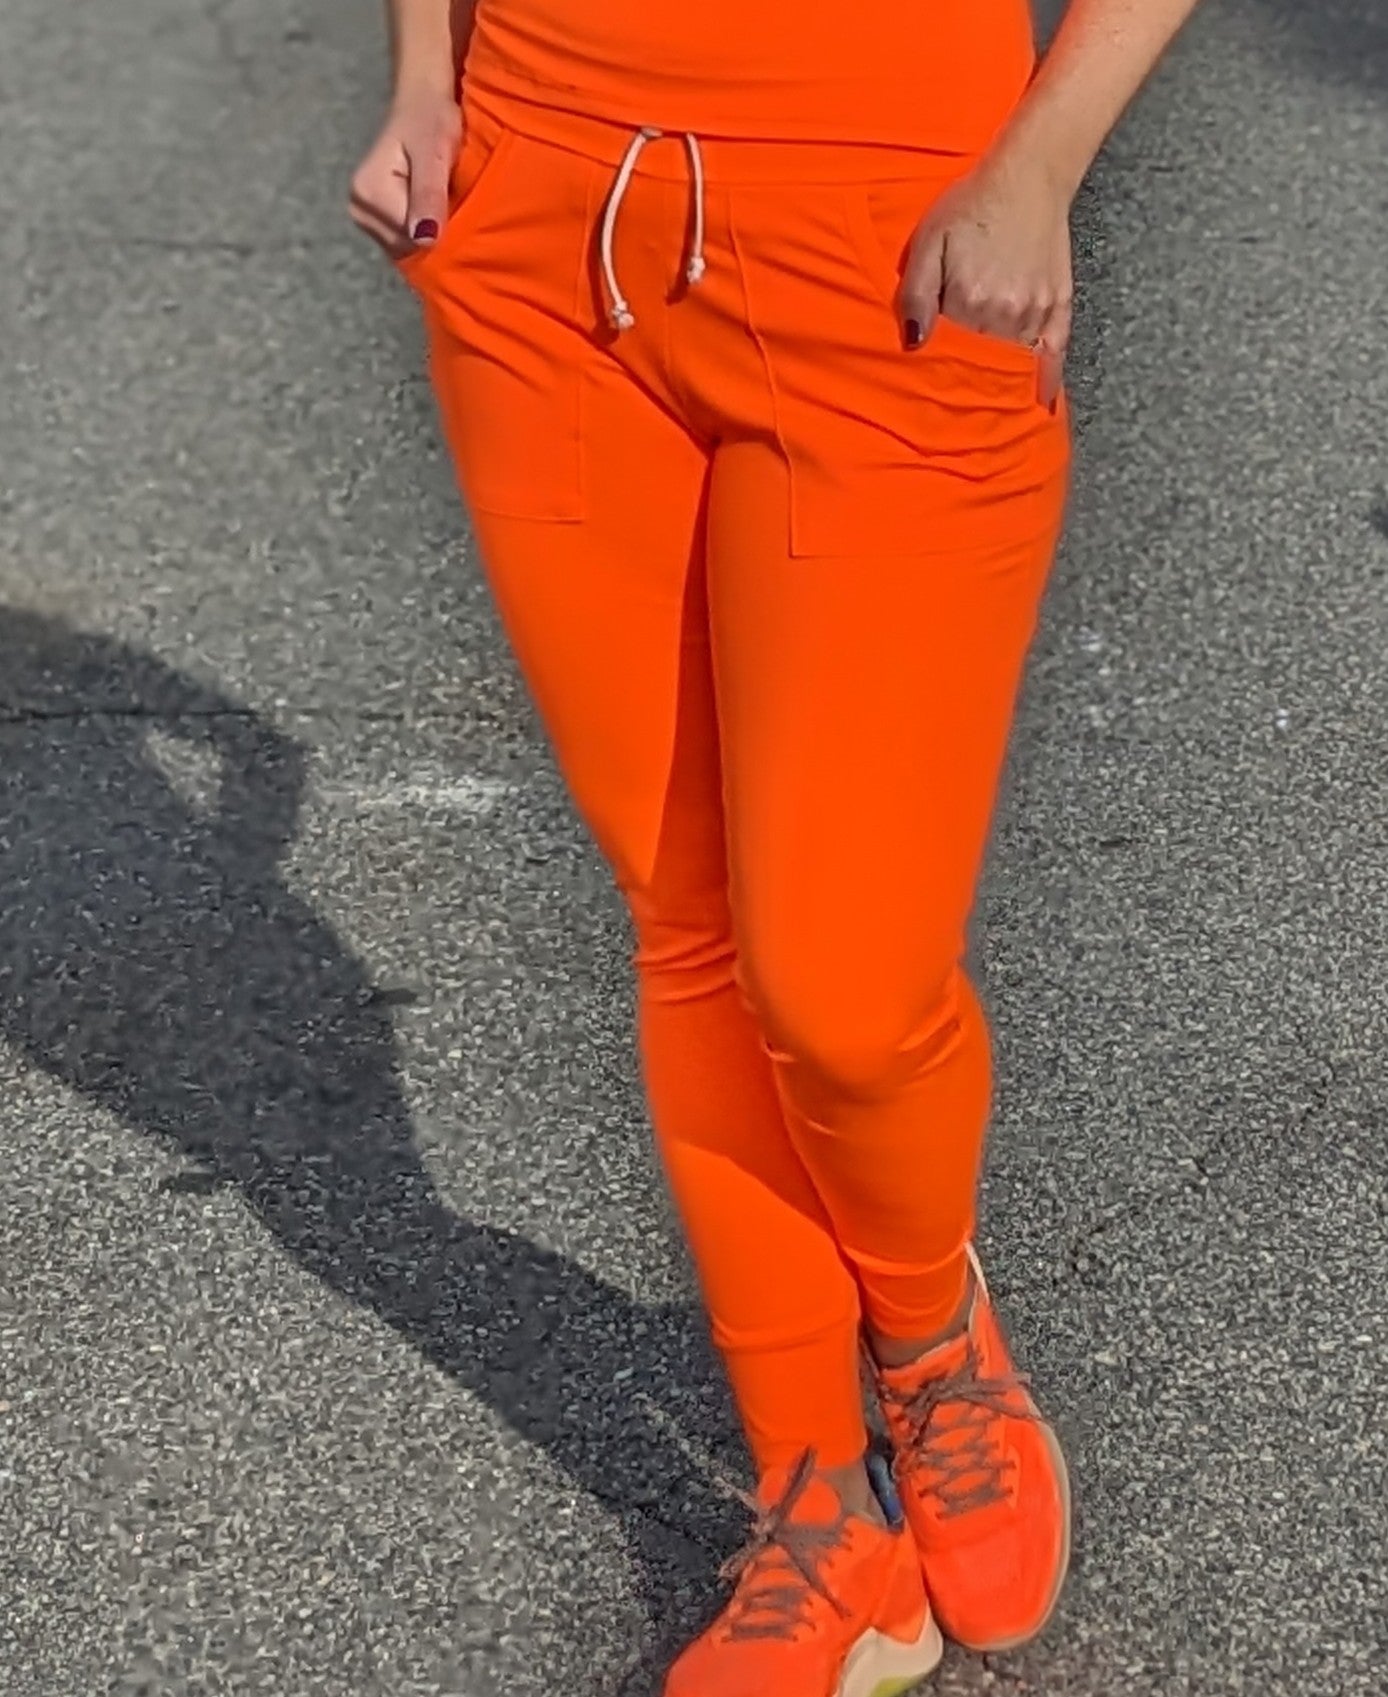 Neon Orange, Brushed Athletic Knit - Boho Fabrics